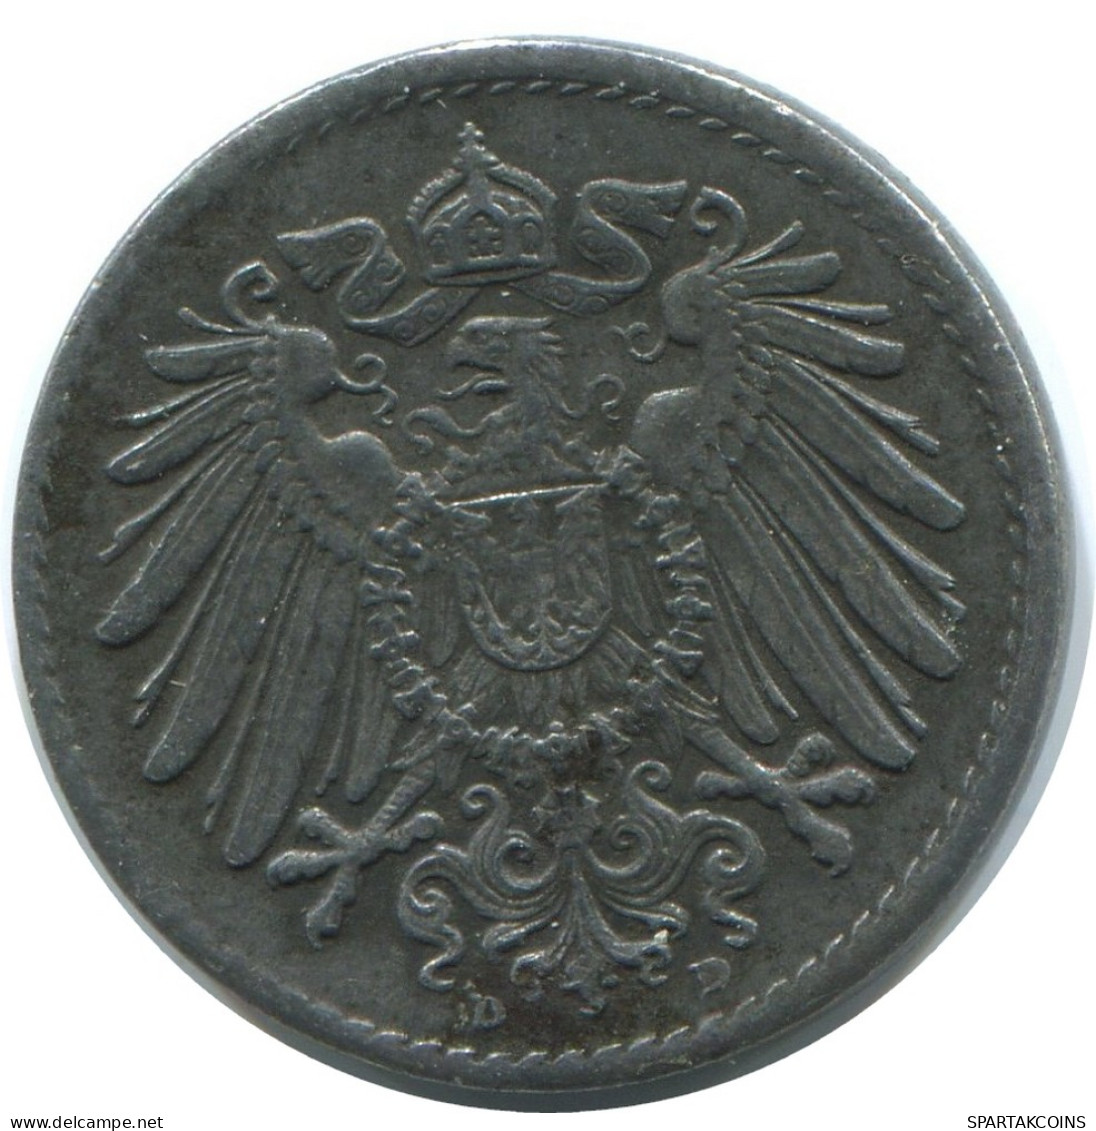 5 PFENNIG 1921 D GERMANY Coin #AE291.U - 5 Rentenpfennig & 5 Reichspfennig